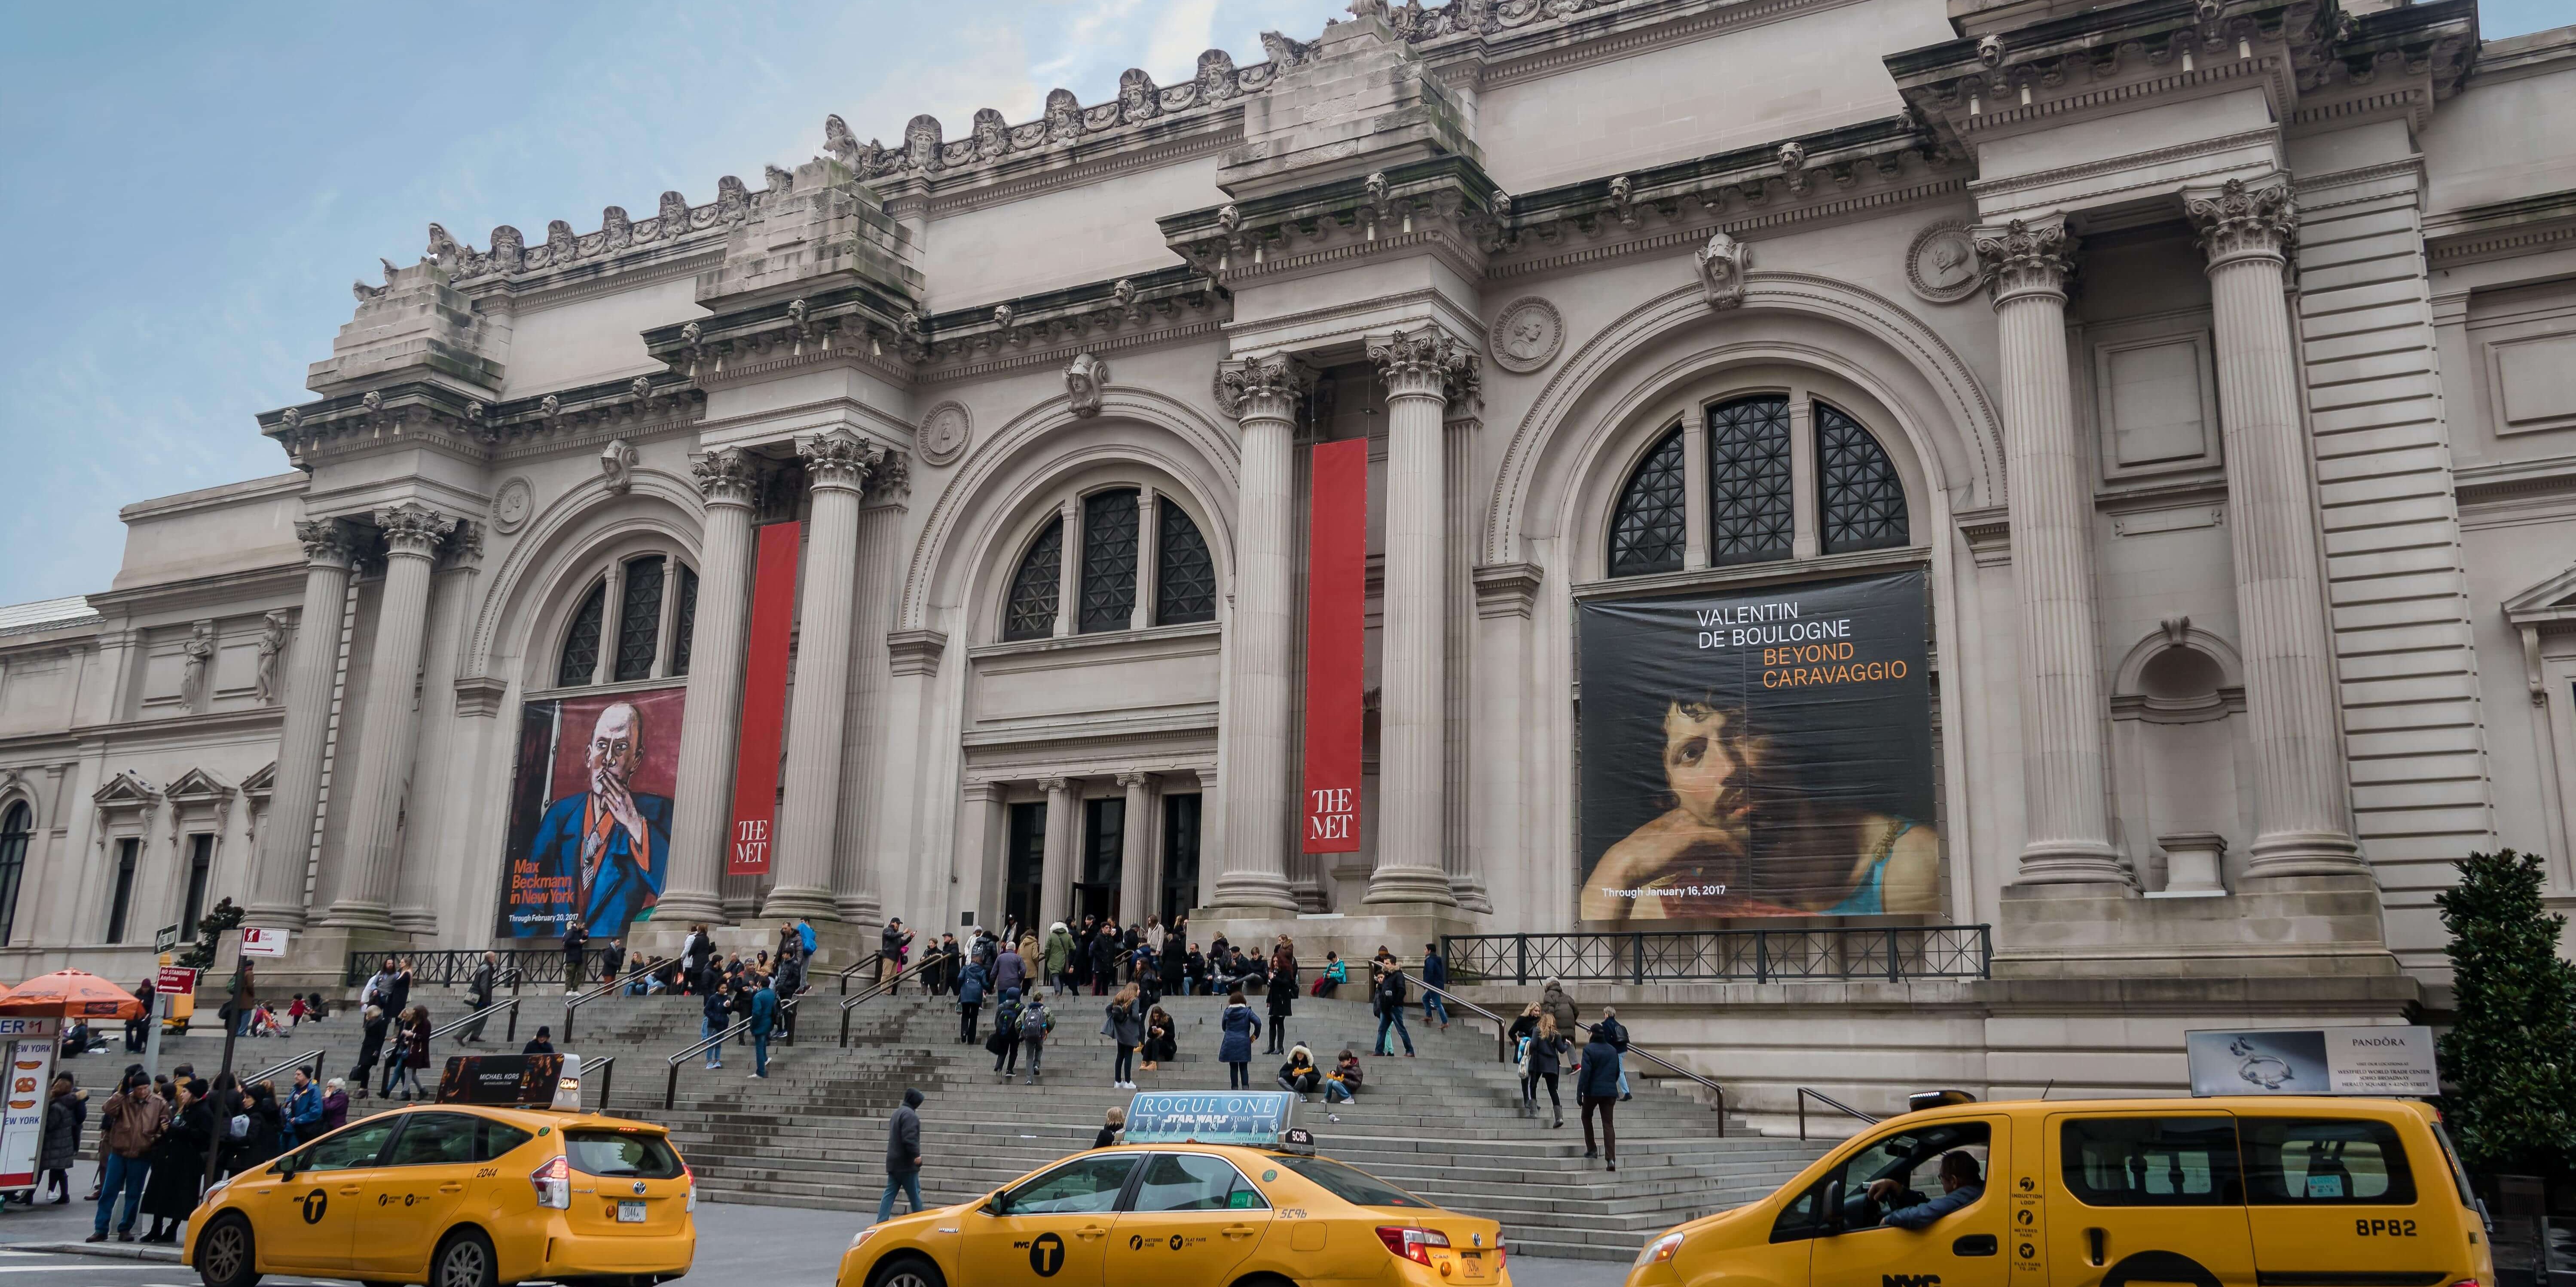 The Met Museum